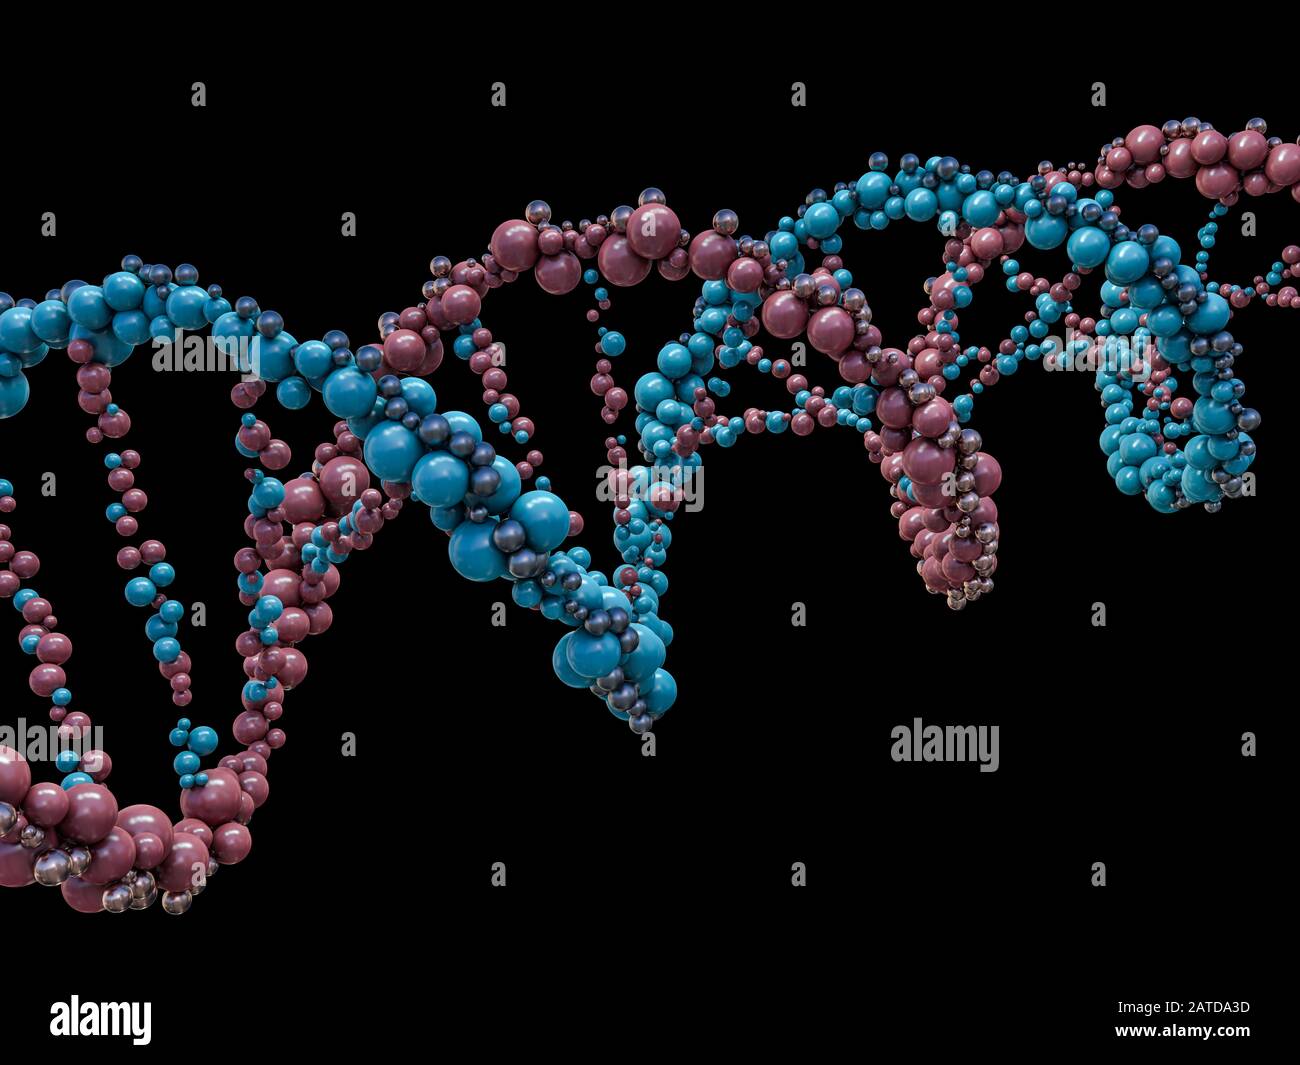 La chaîne d'ADN. Abstract background scientifique. Belle illustraion. La biotechnologie, la biochimie, de la génétique et de la médecine. Le rendu 3D Banque D'Images